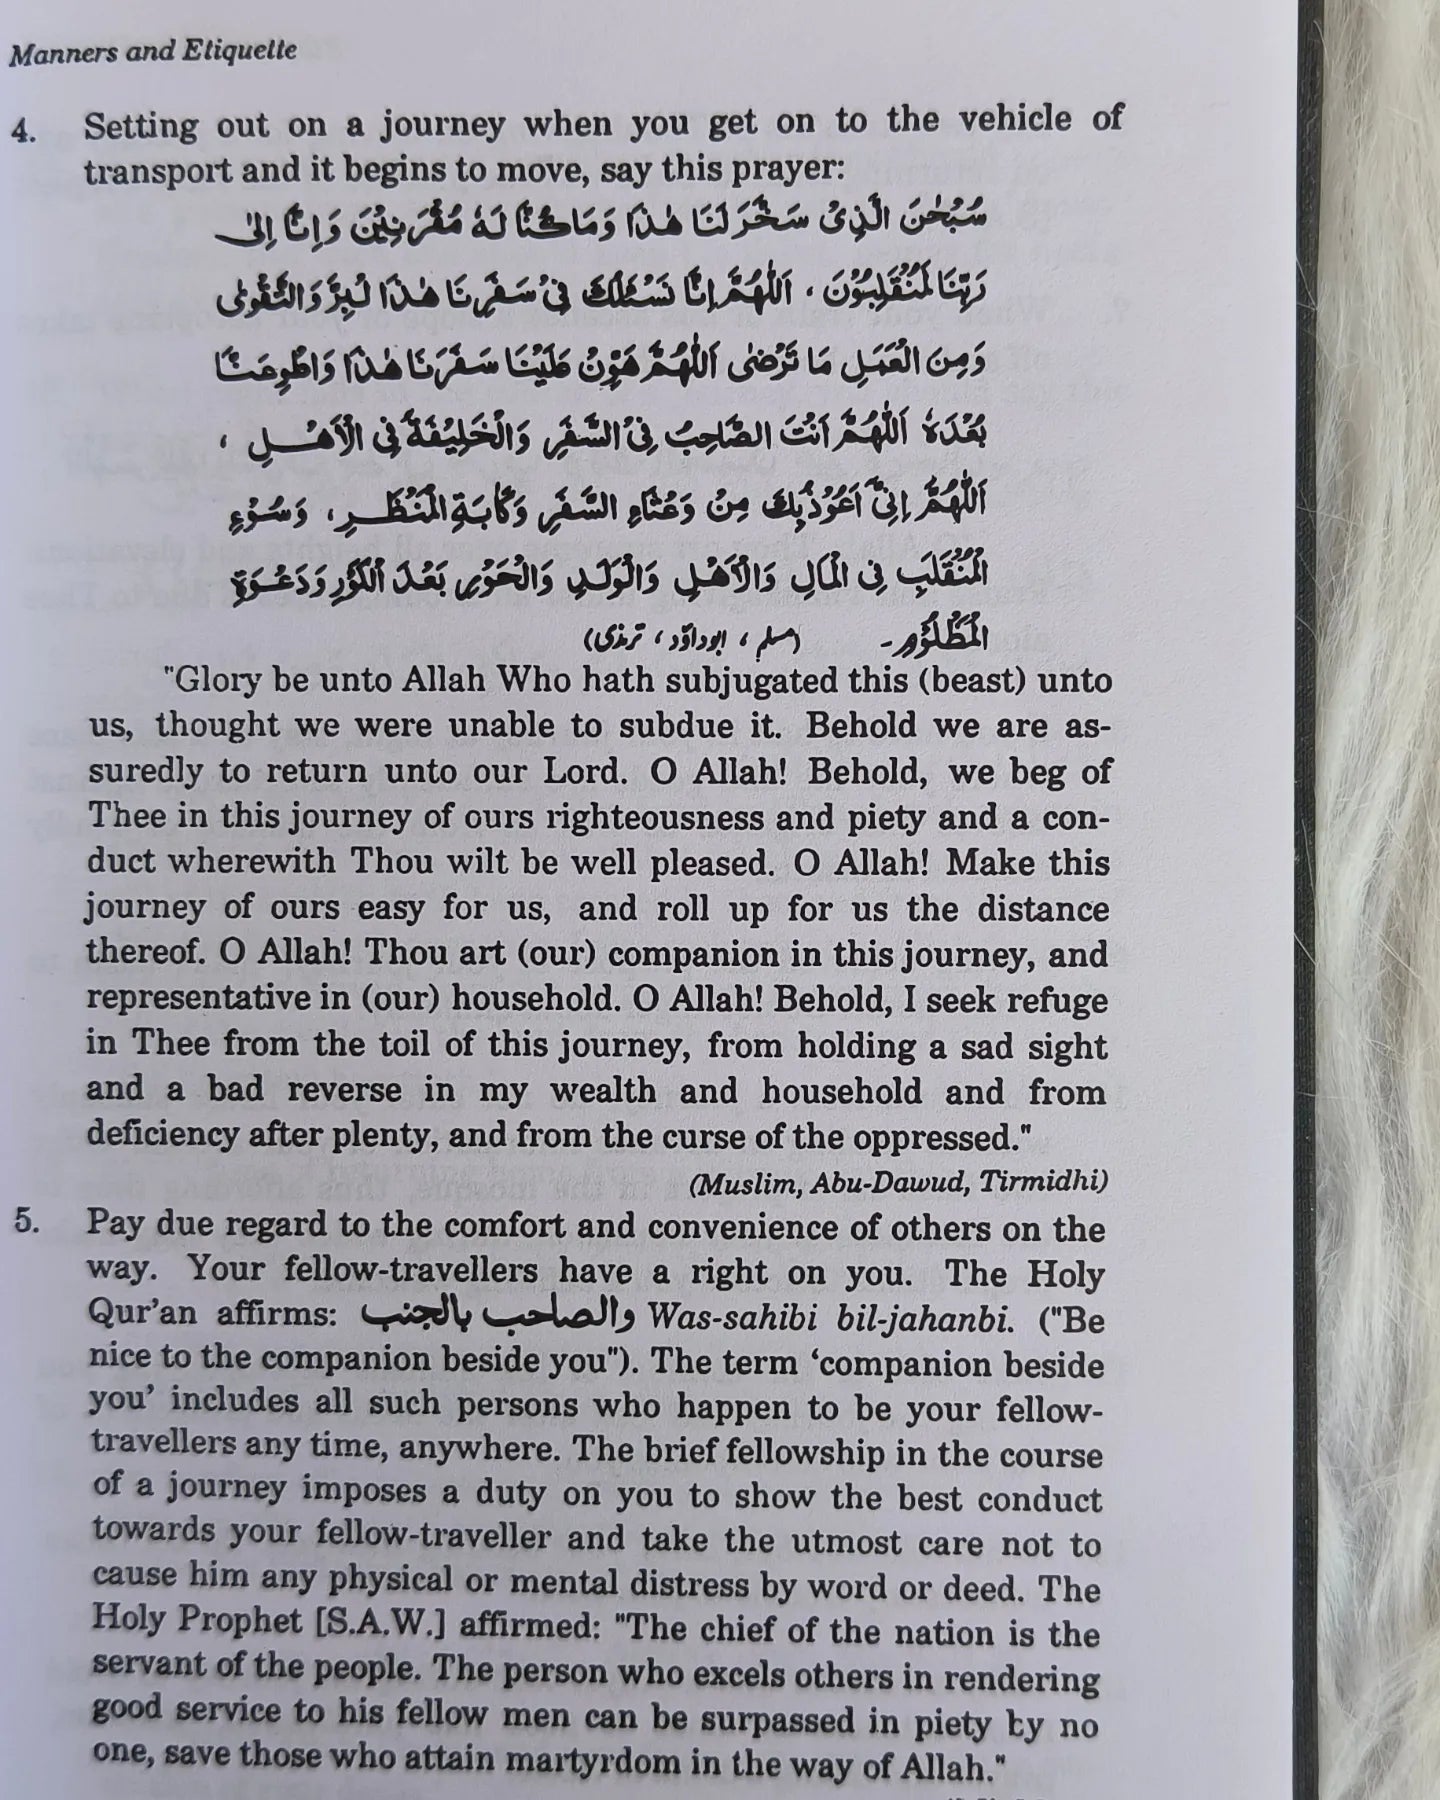 Etiquette of Life in Islam (Adab e Zindagi) by Maulana Muhammad Yusuf Islahi (Author) alifthebookstore